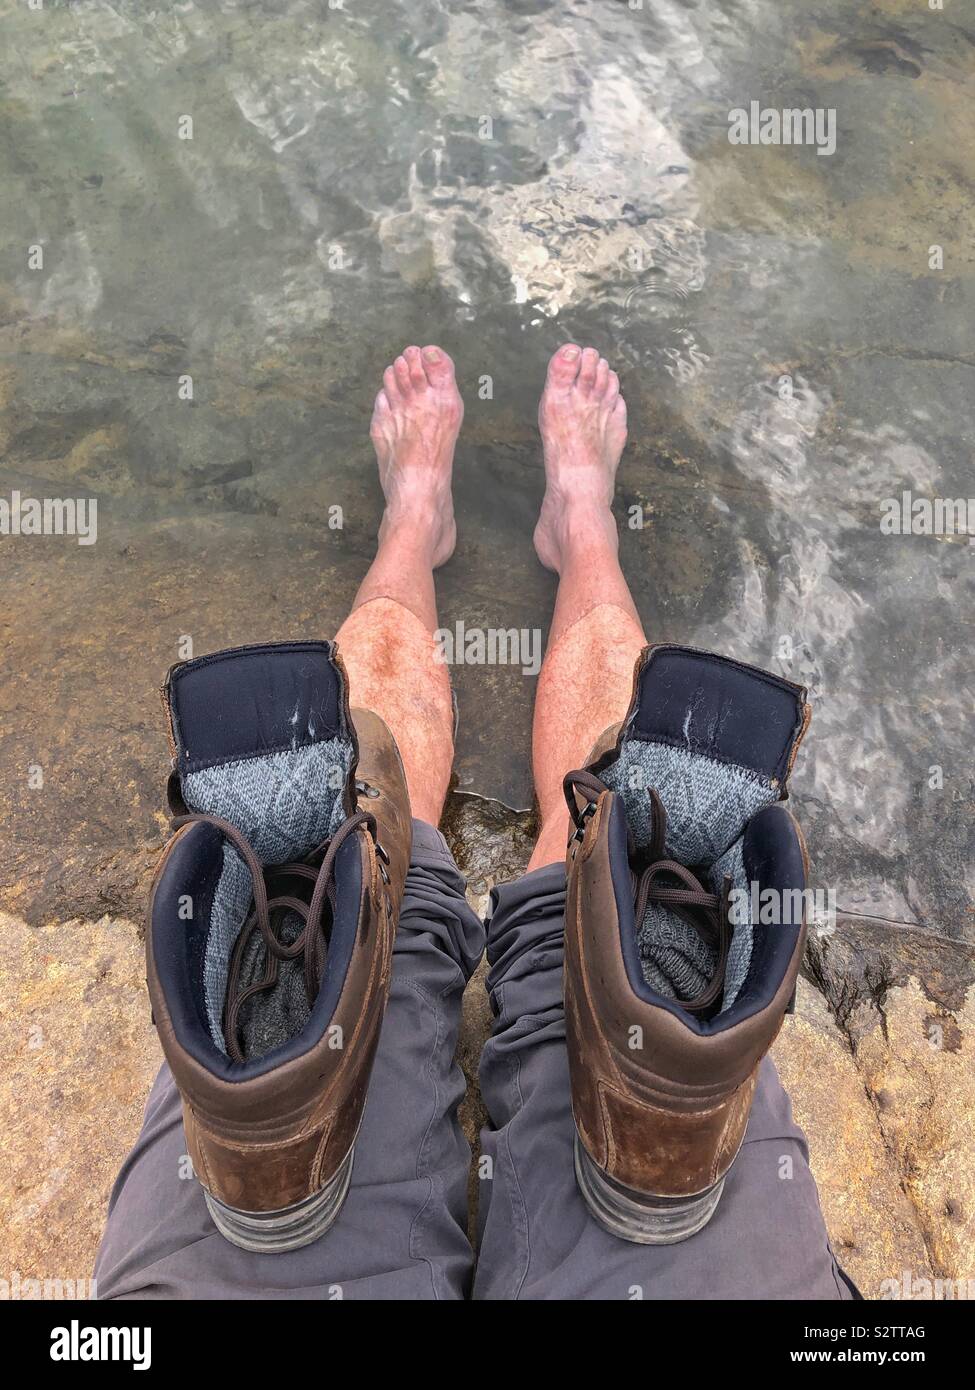 Abkühlen der Füße in einem Bergsee nach einem langen Spaziergang. Stockfoto